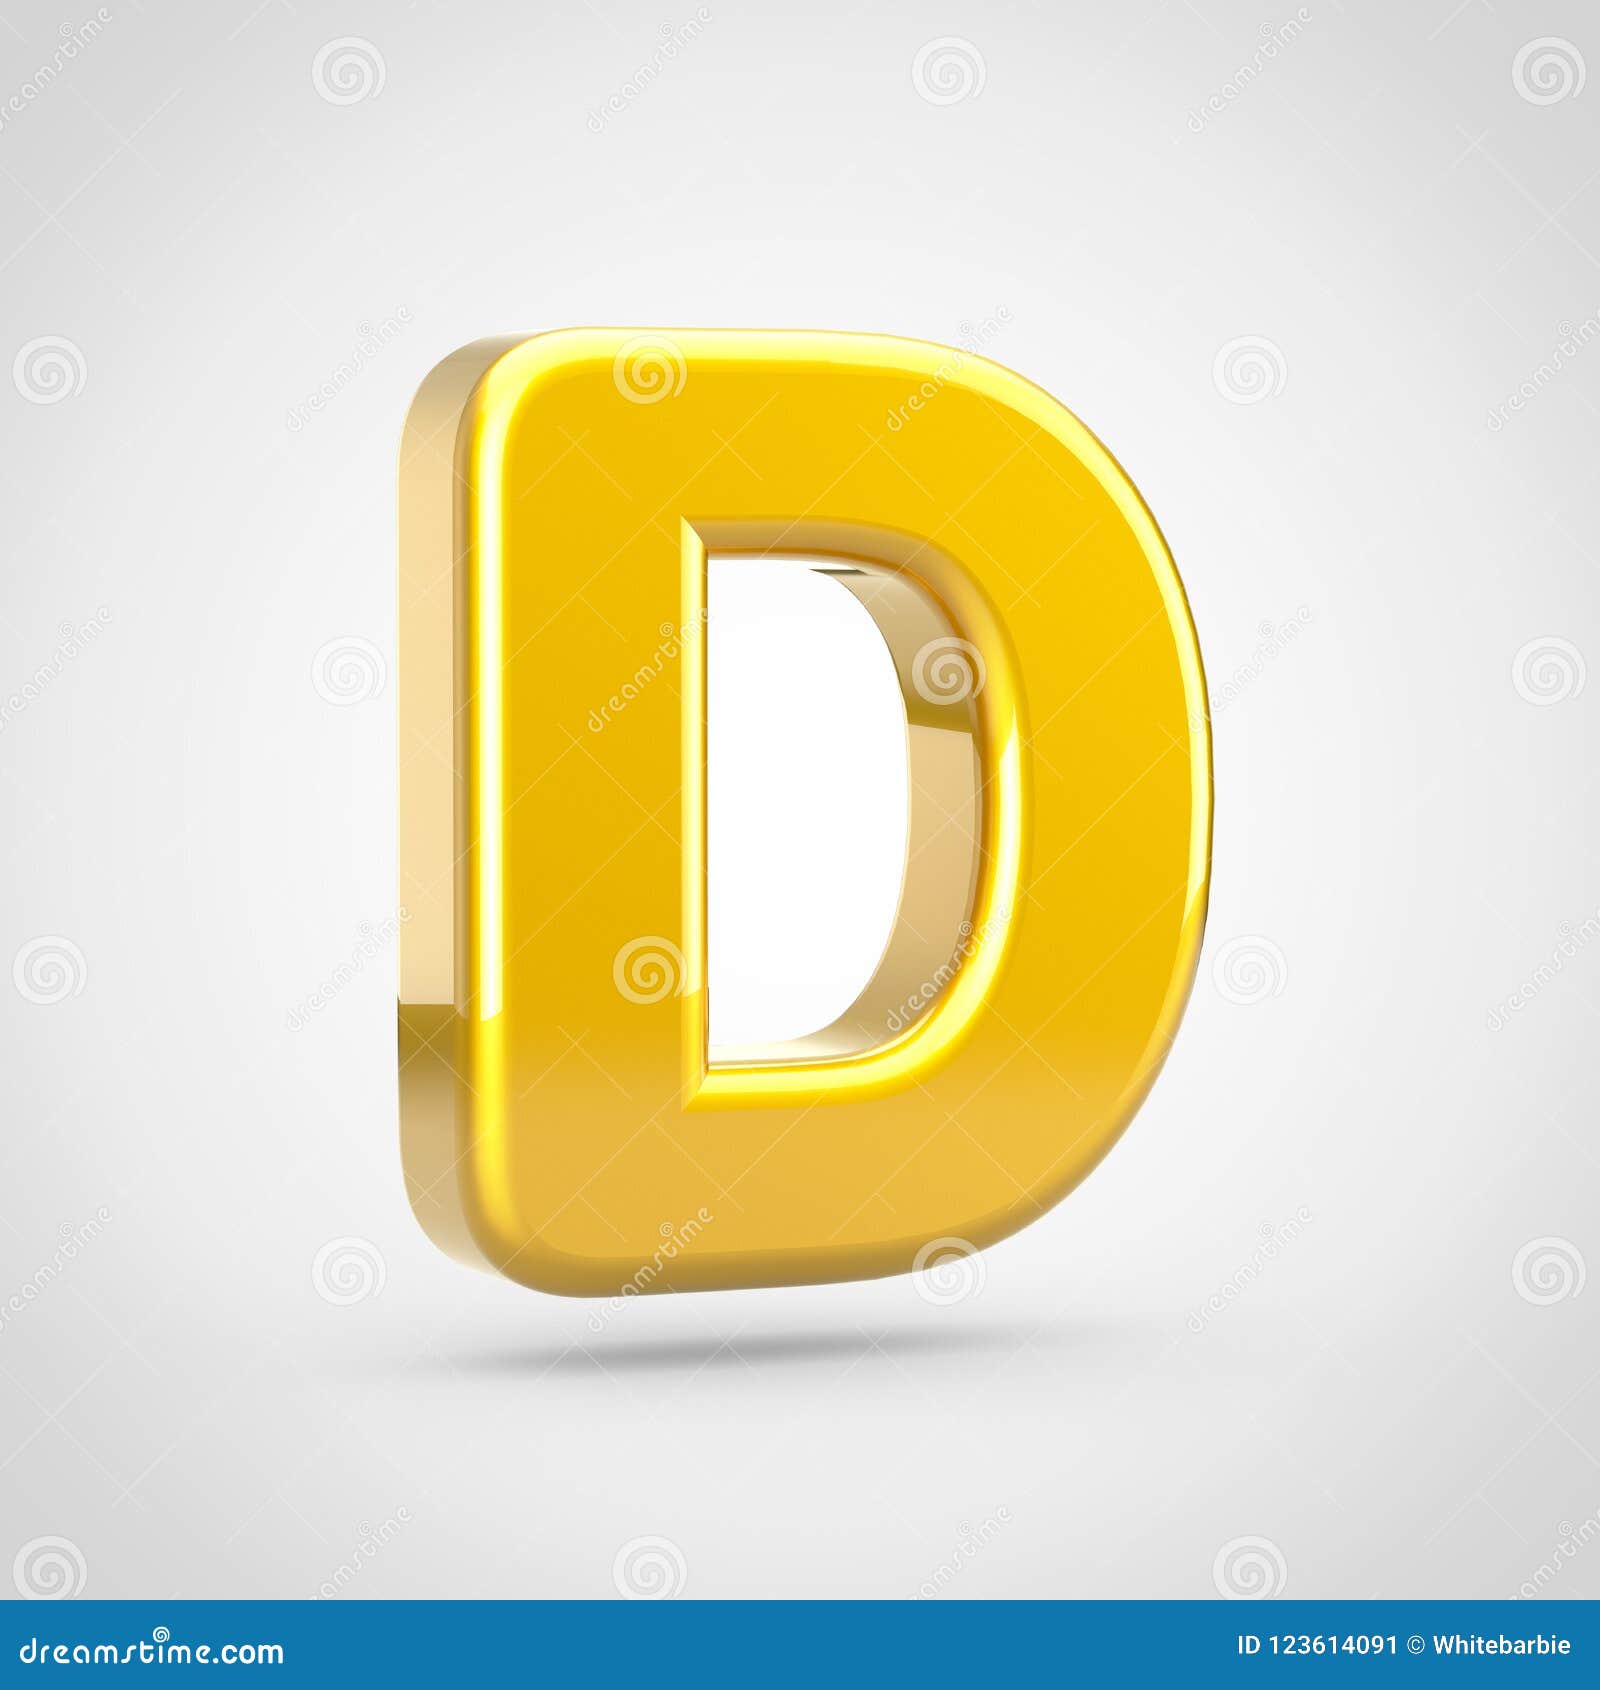 Golden Letter D Uppercase Isolated on White Background. Stock ...